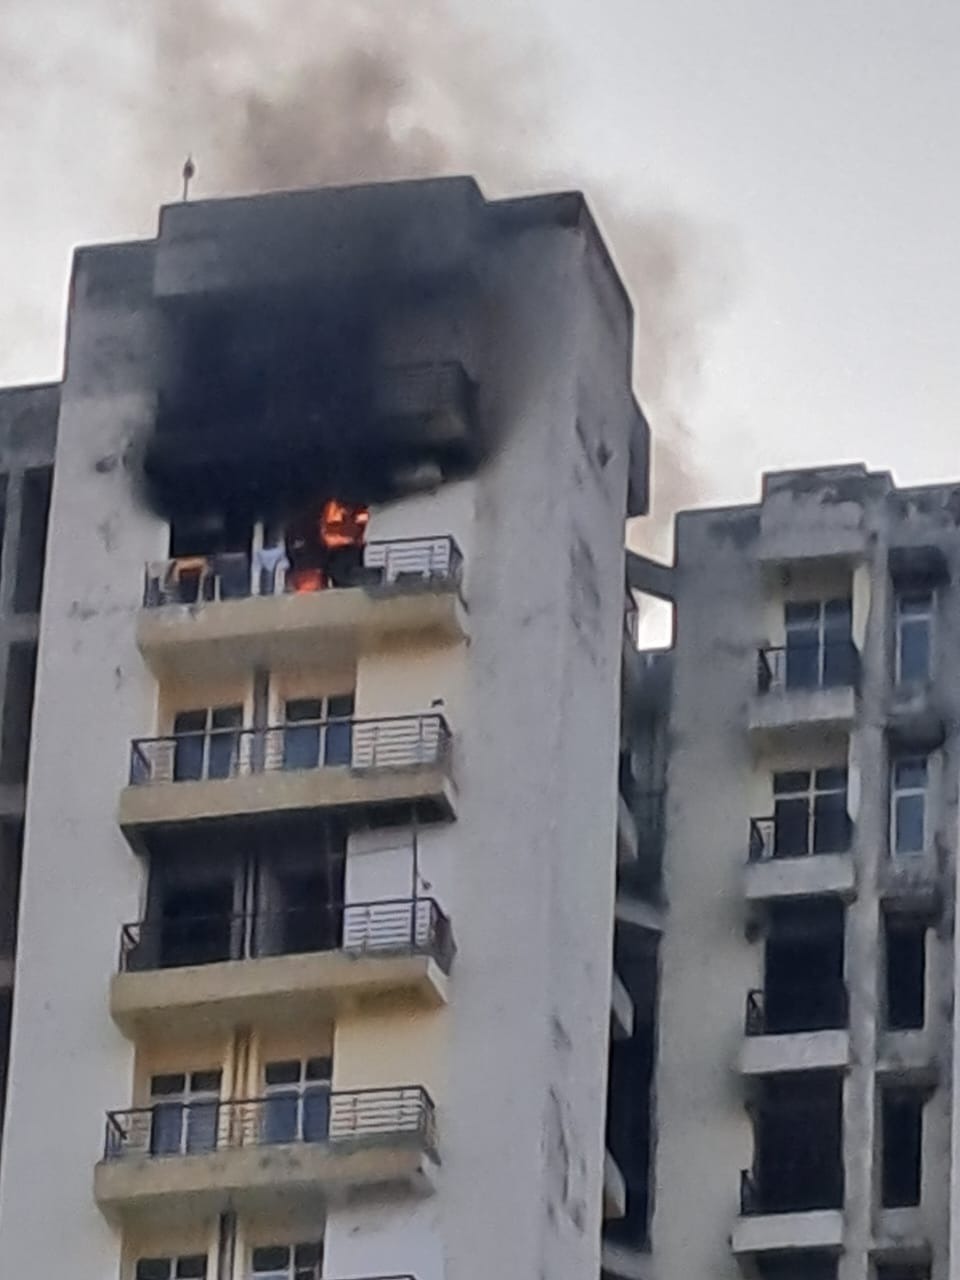 Noida fire: आप के पड़ोस की सोसाइटी में लगी आग, मची अफरा तफरी। बिल्डर की बड़ी लापरवाही सामने आई।